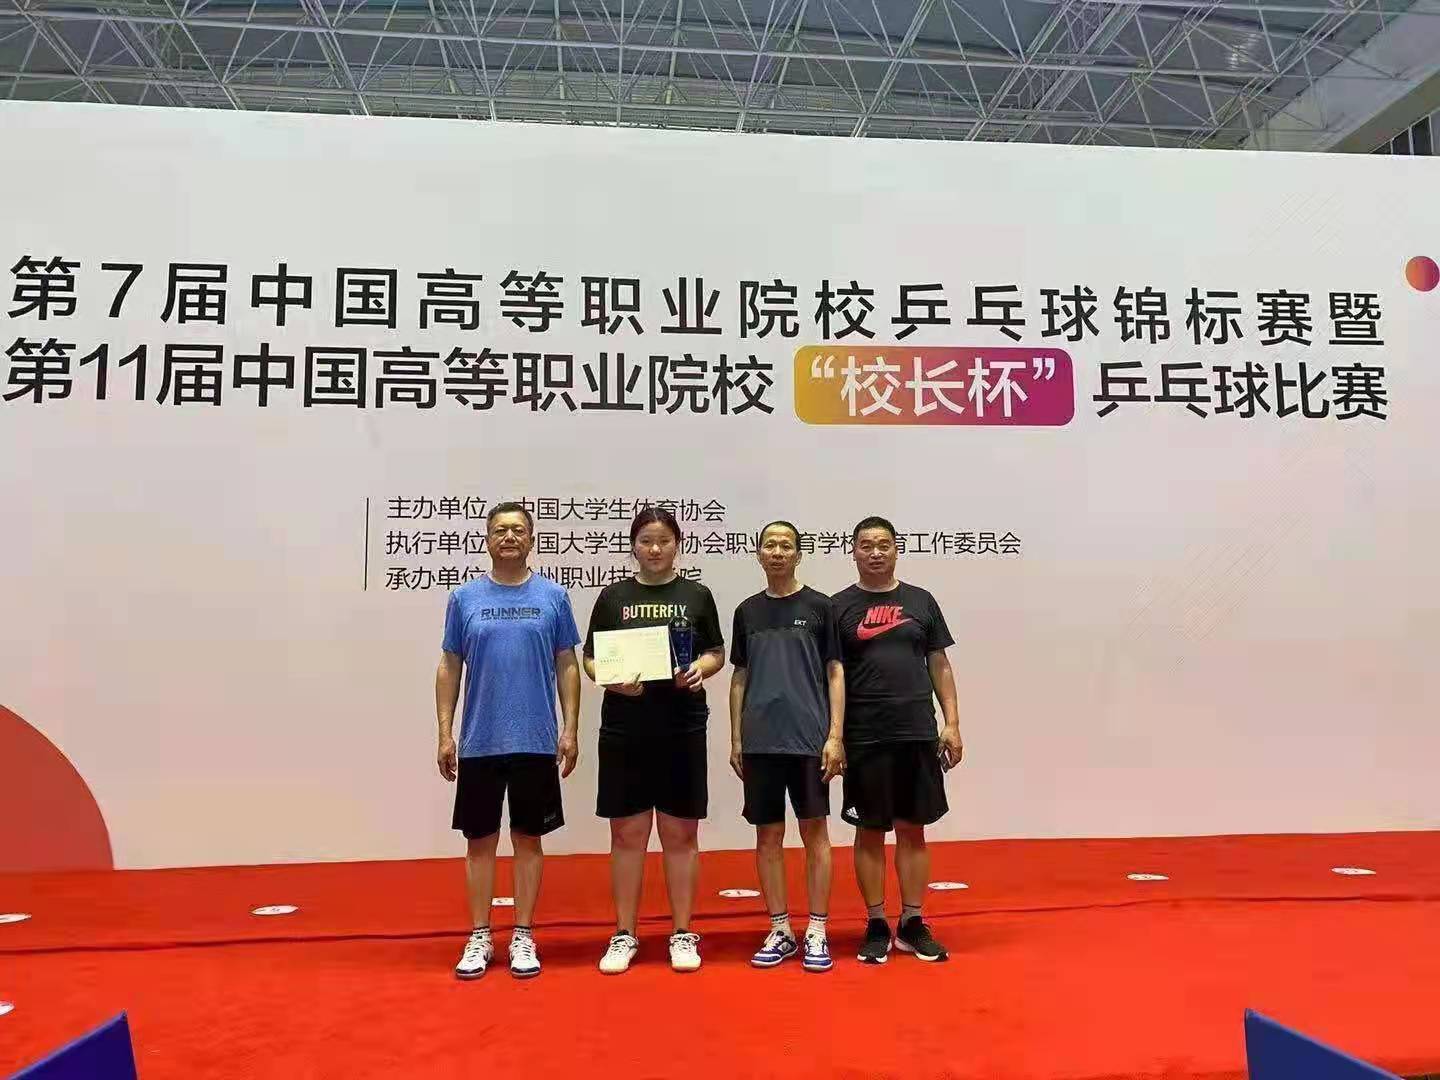 我校學生在第七屆中國高等職業院校乒乓球錦标賽中榮獲亞軍